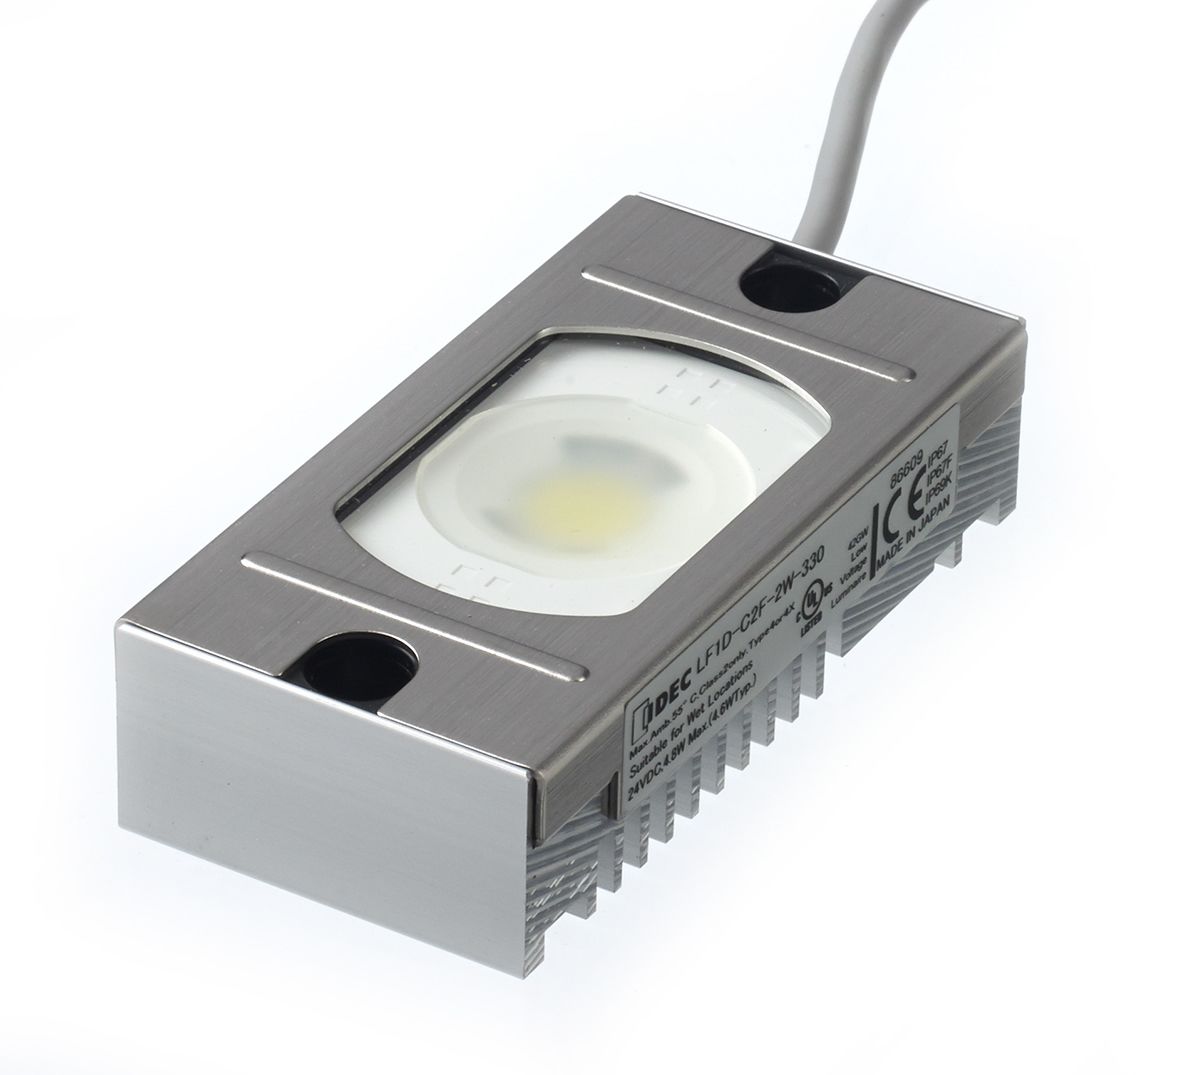 Idec LF1D-C2F-2W-330 LED 4.6 W Cabinet Light, 24 V dc, White, 5700K